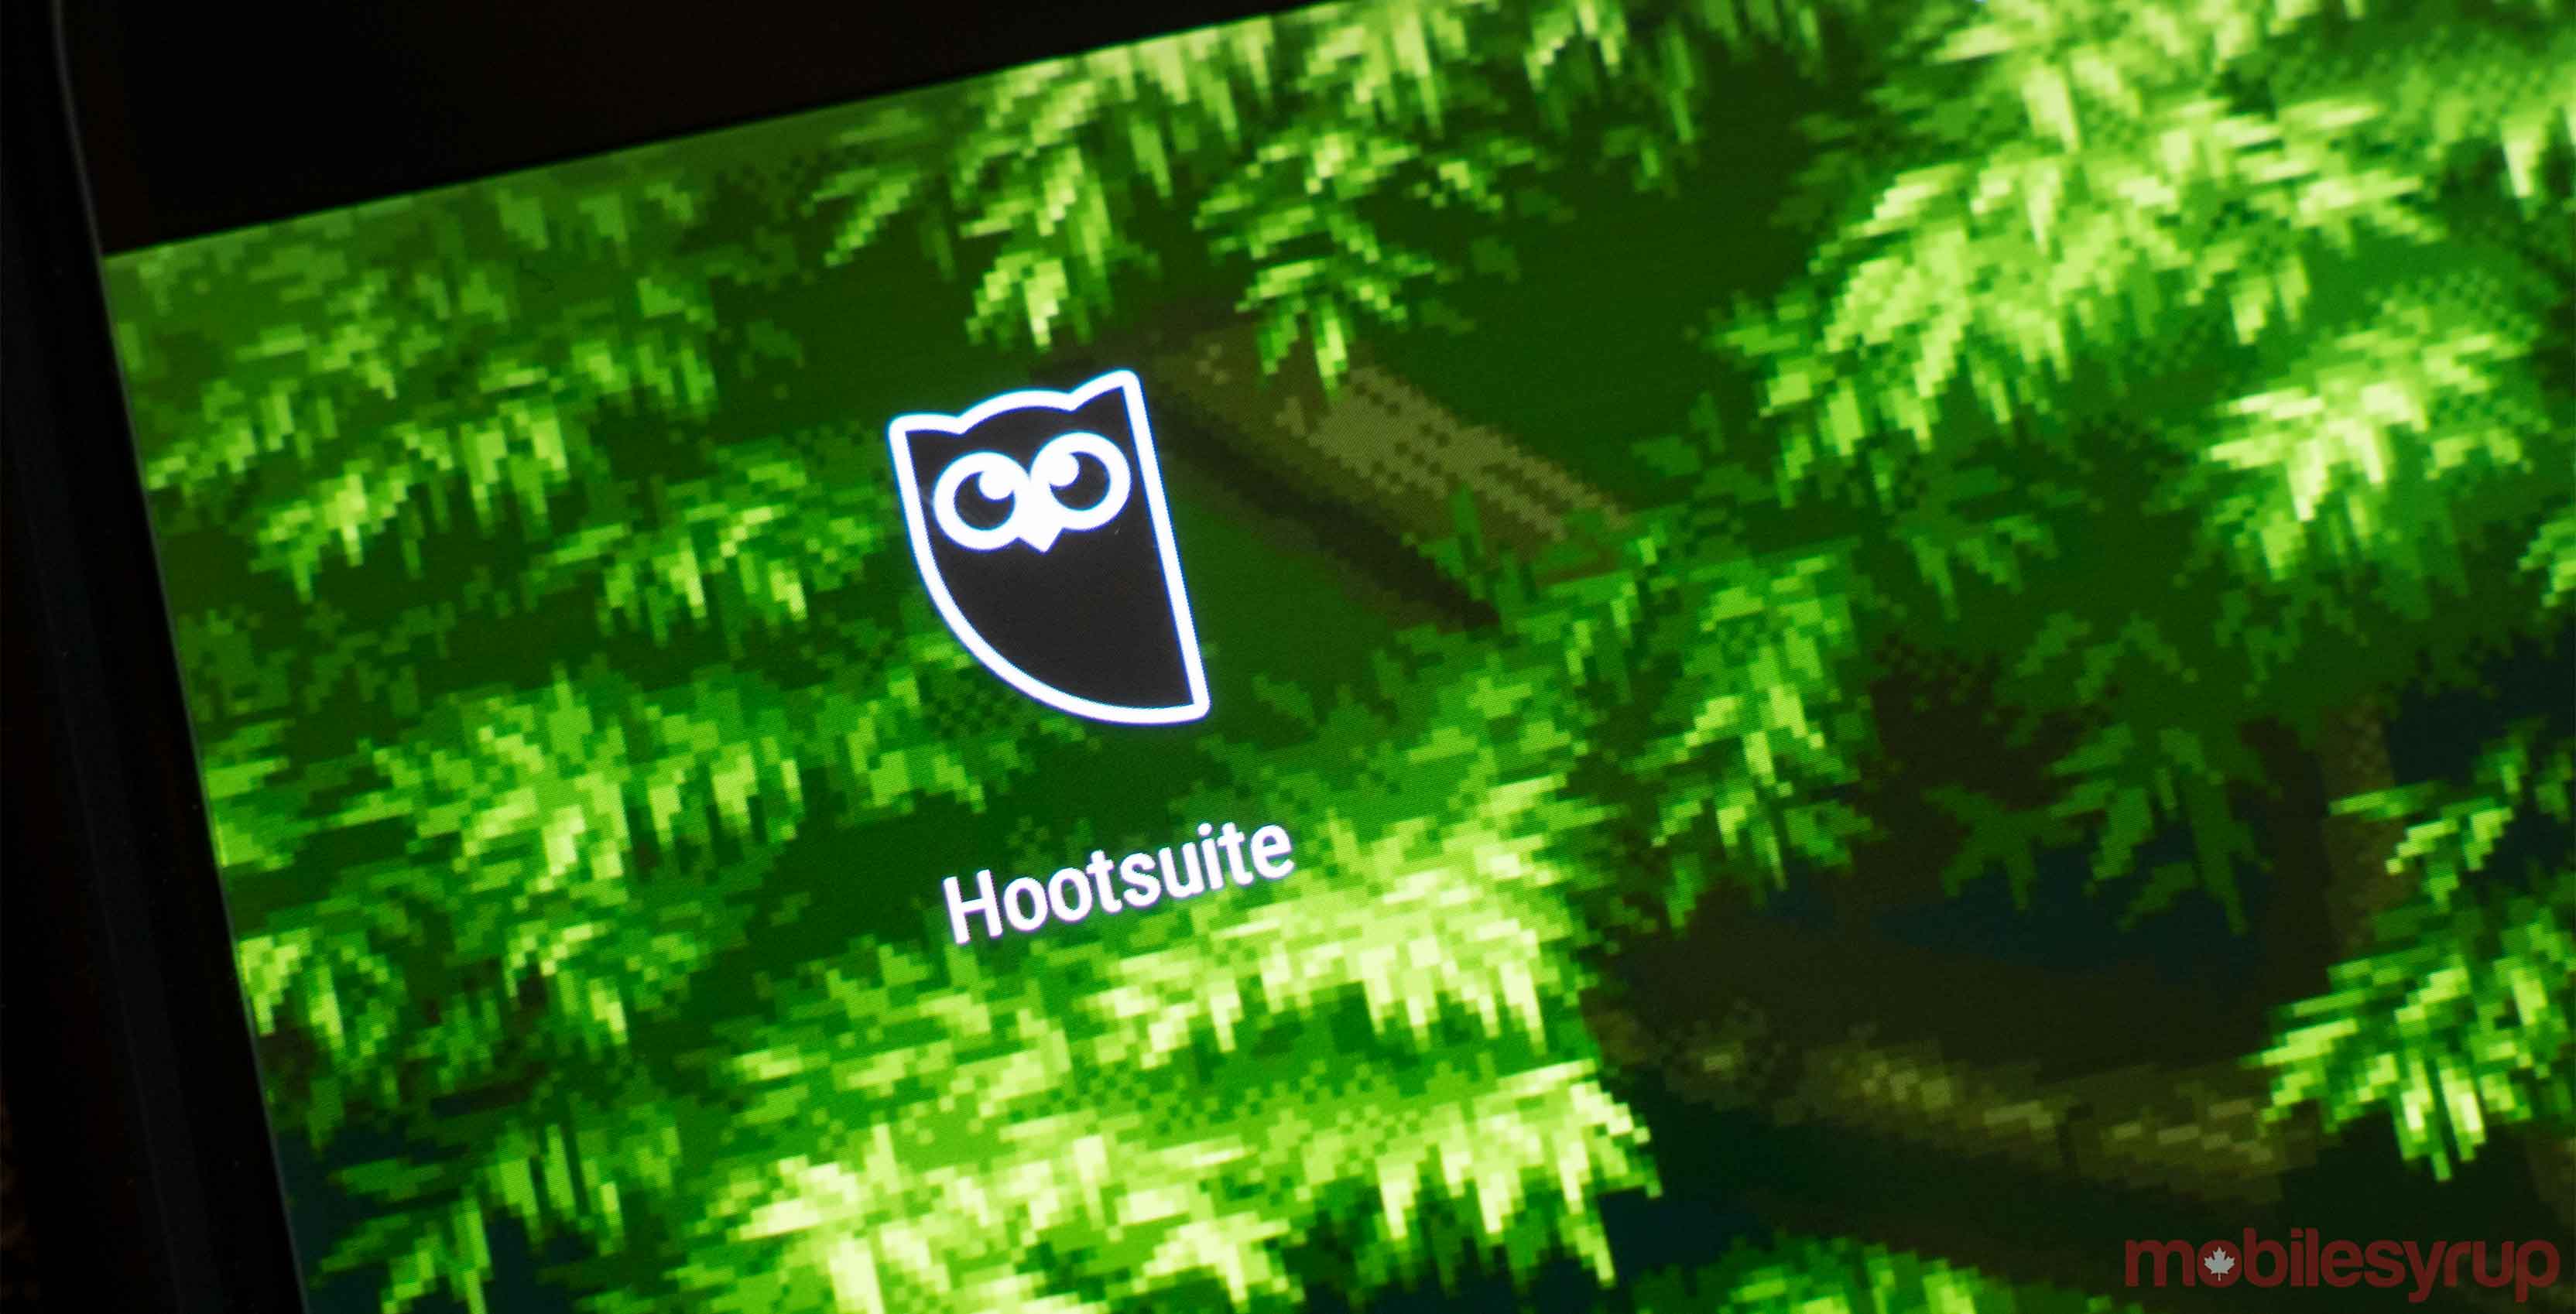 Hootsuite acquires